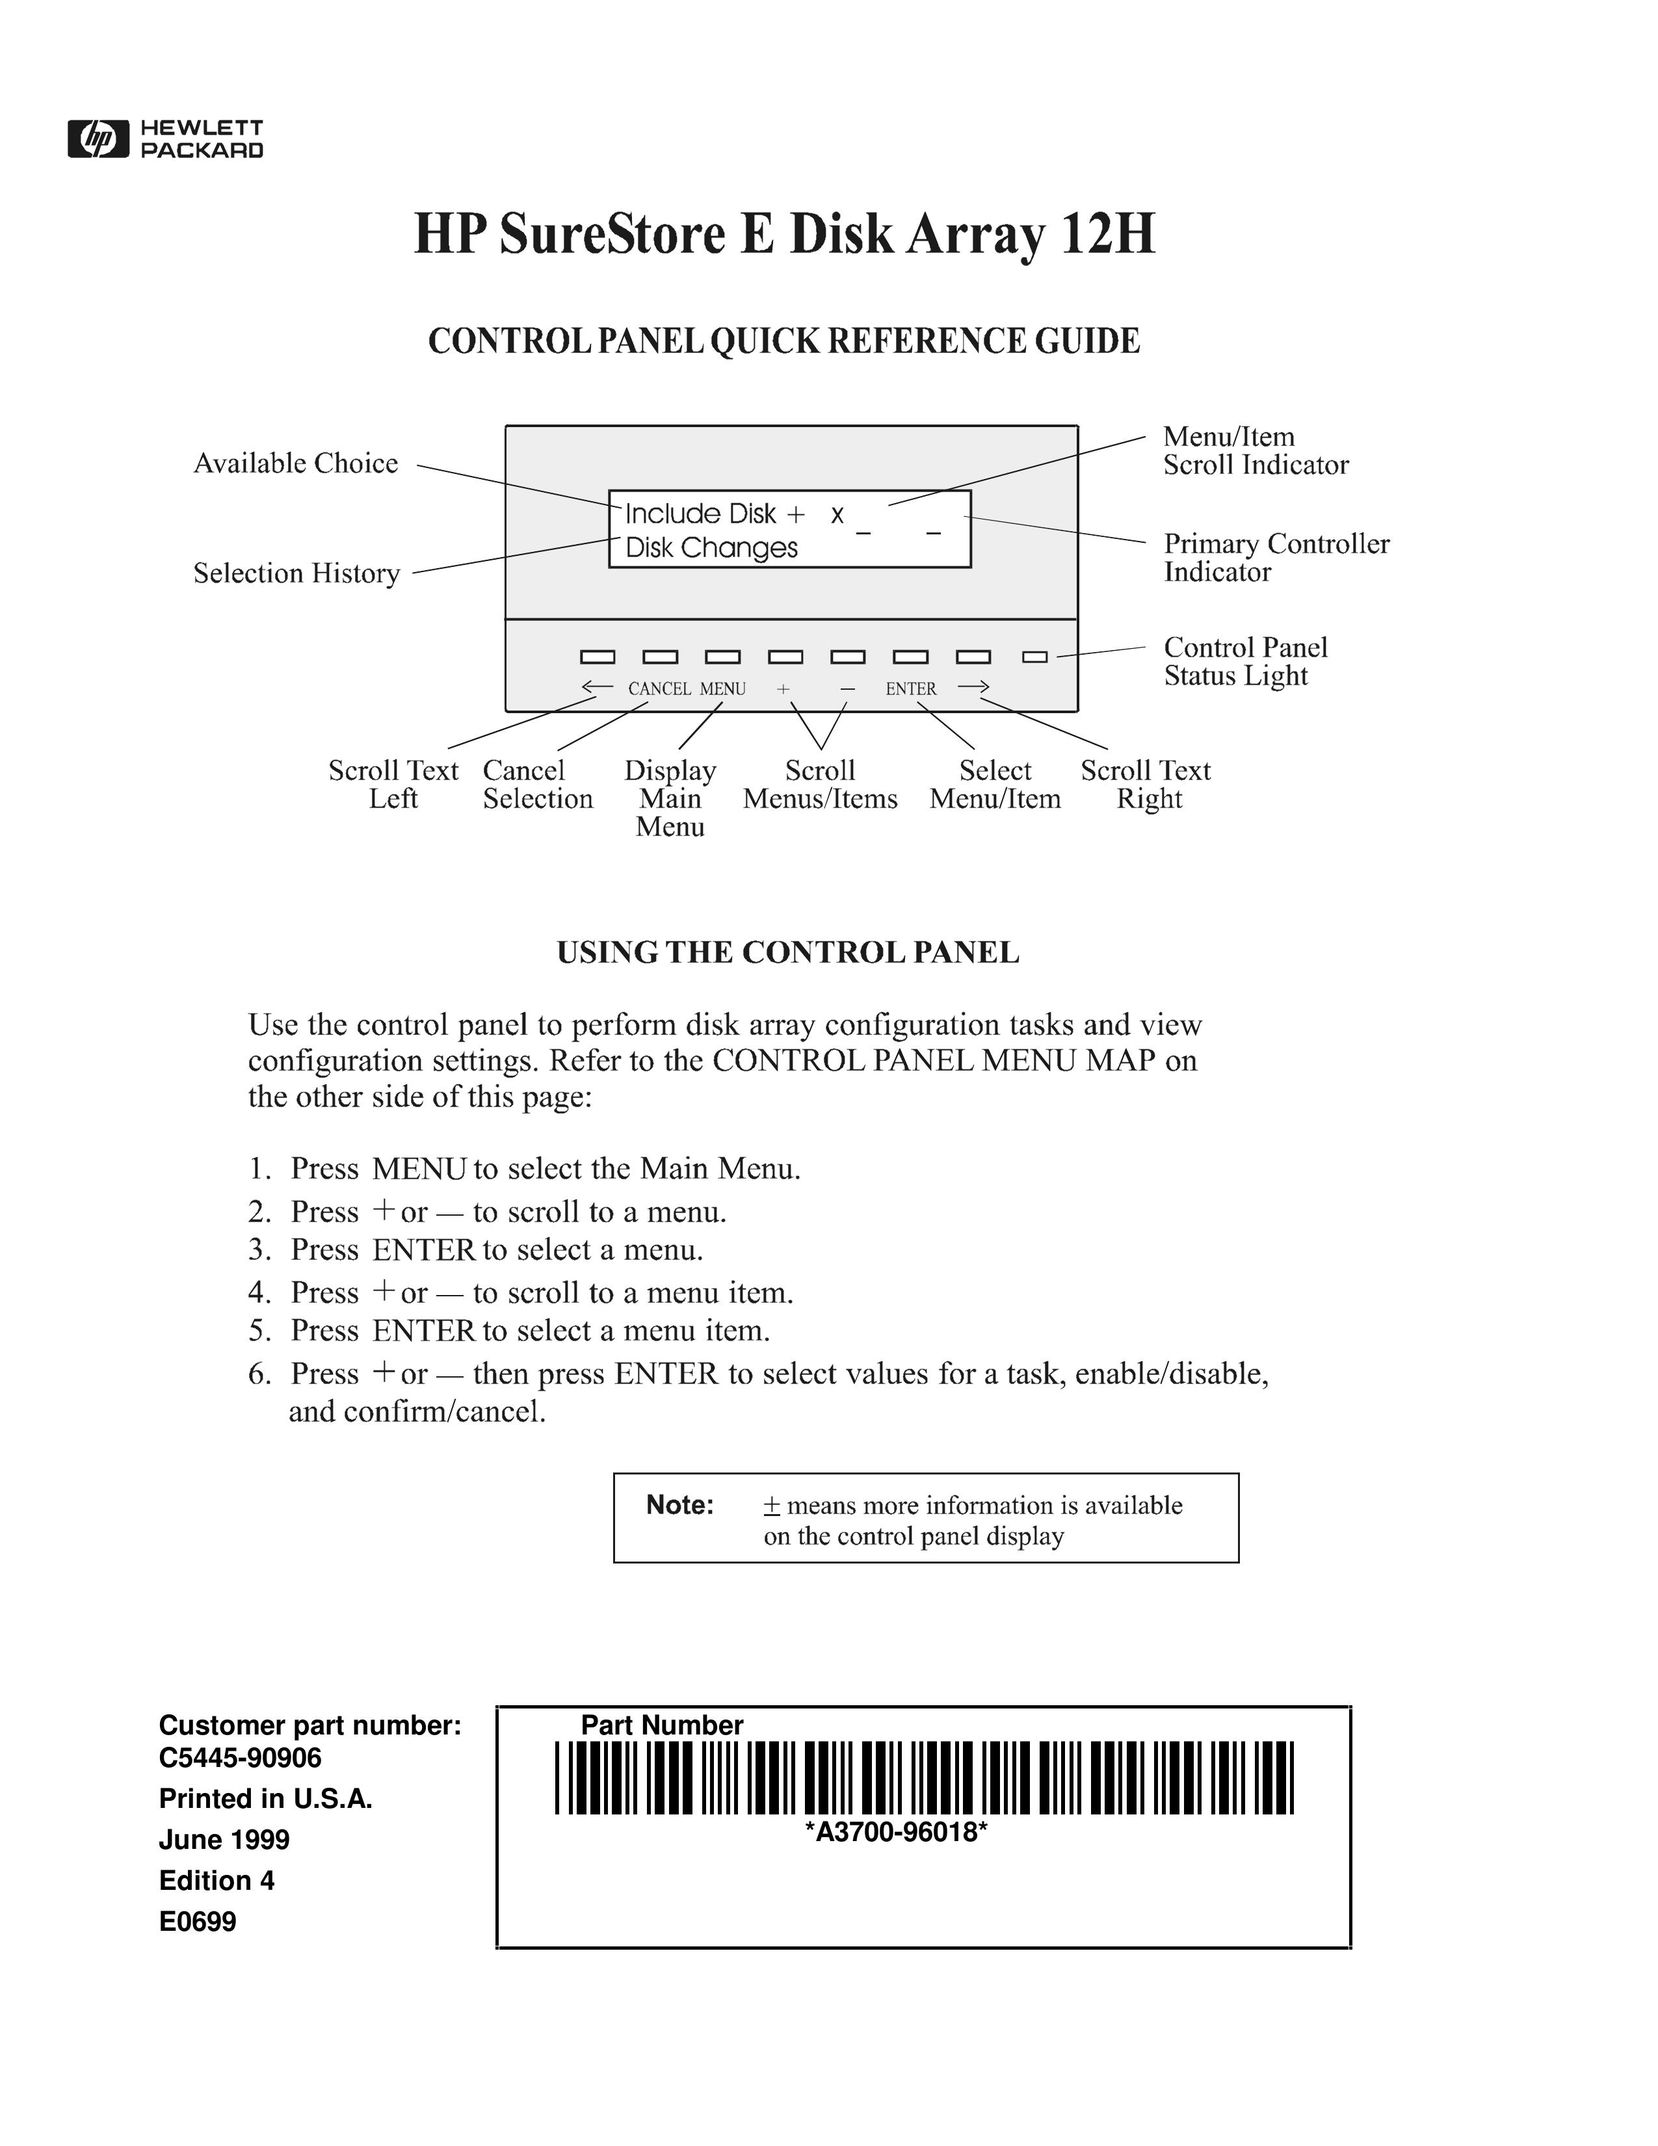 HP (Hewlett-Packard) C5445-90906 Computer Drive User Manual